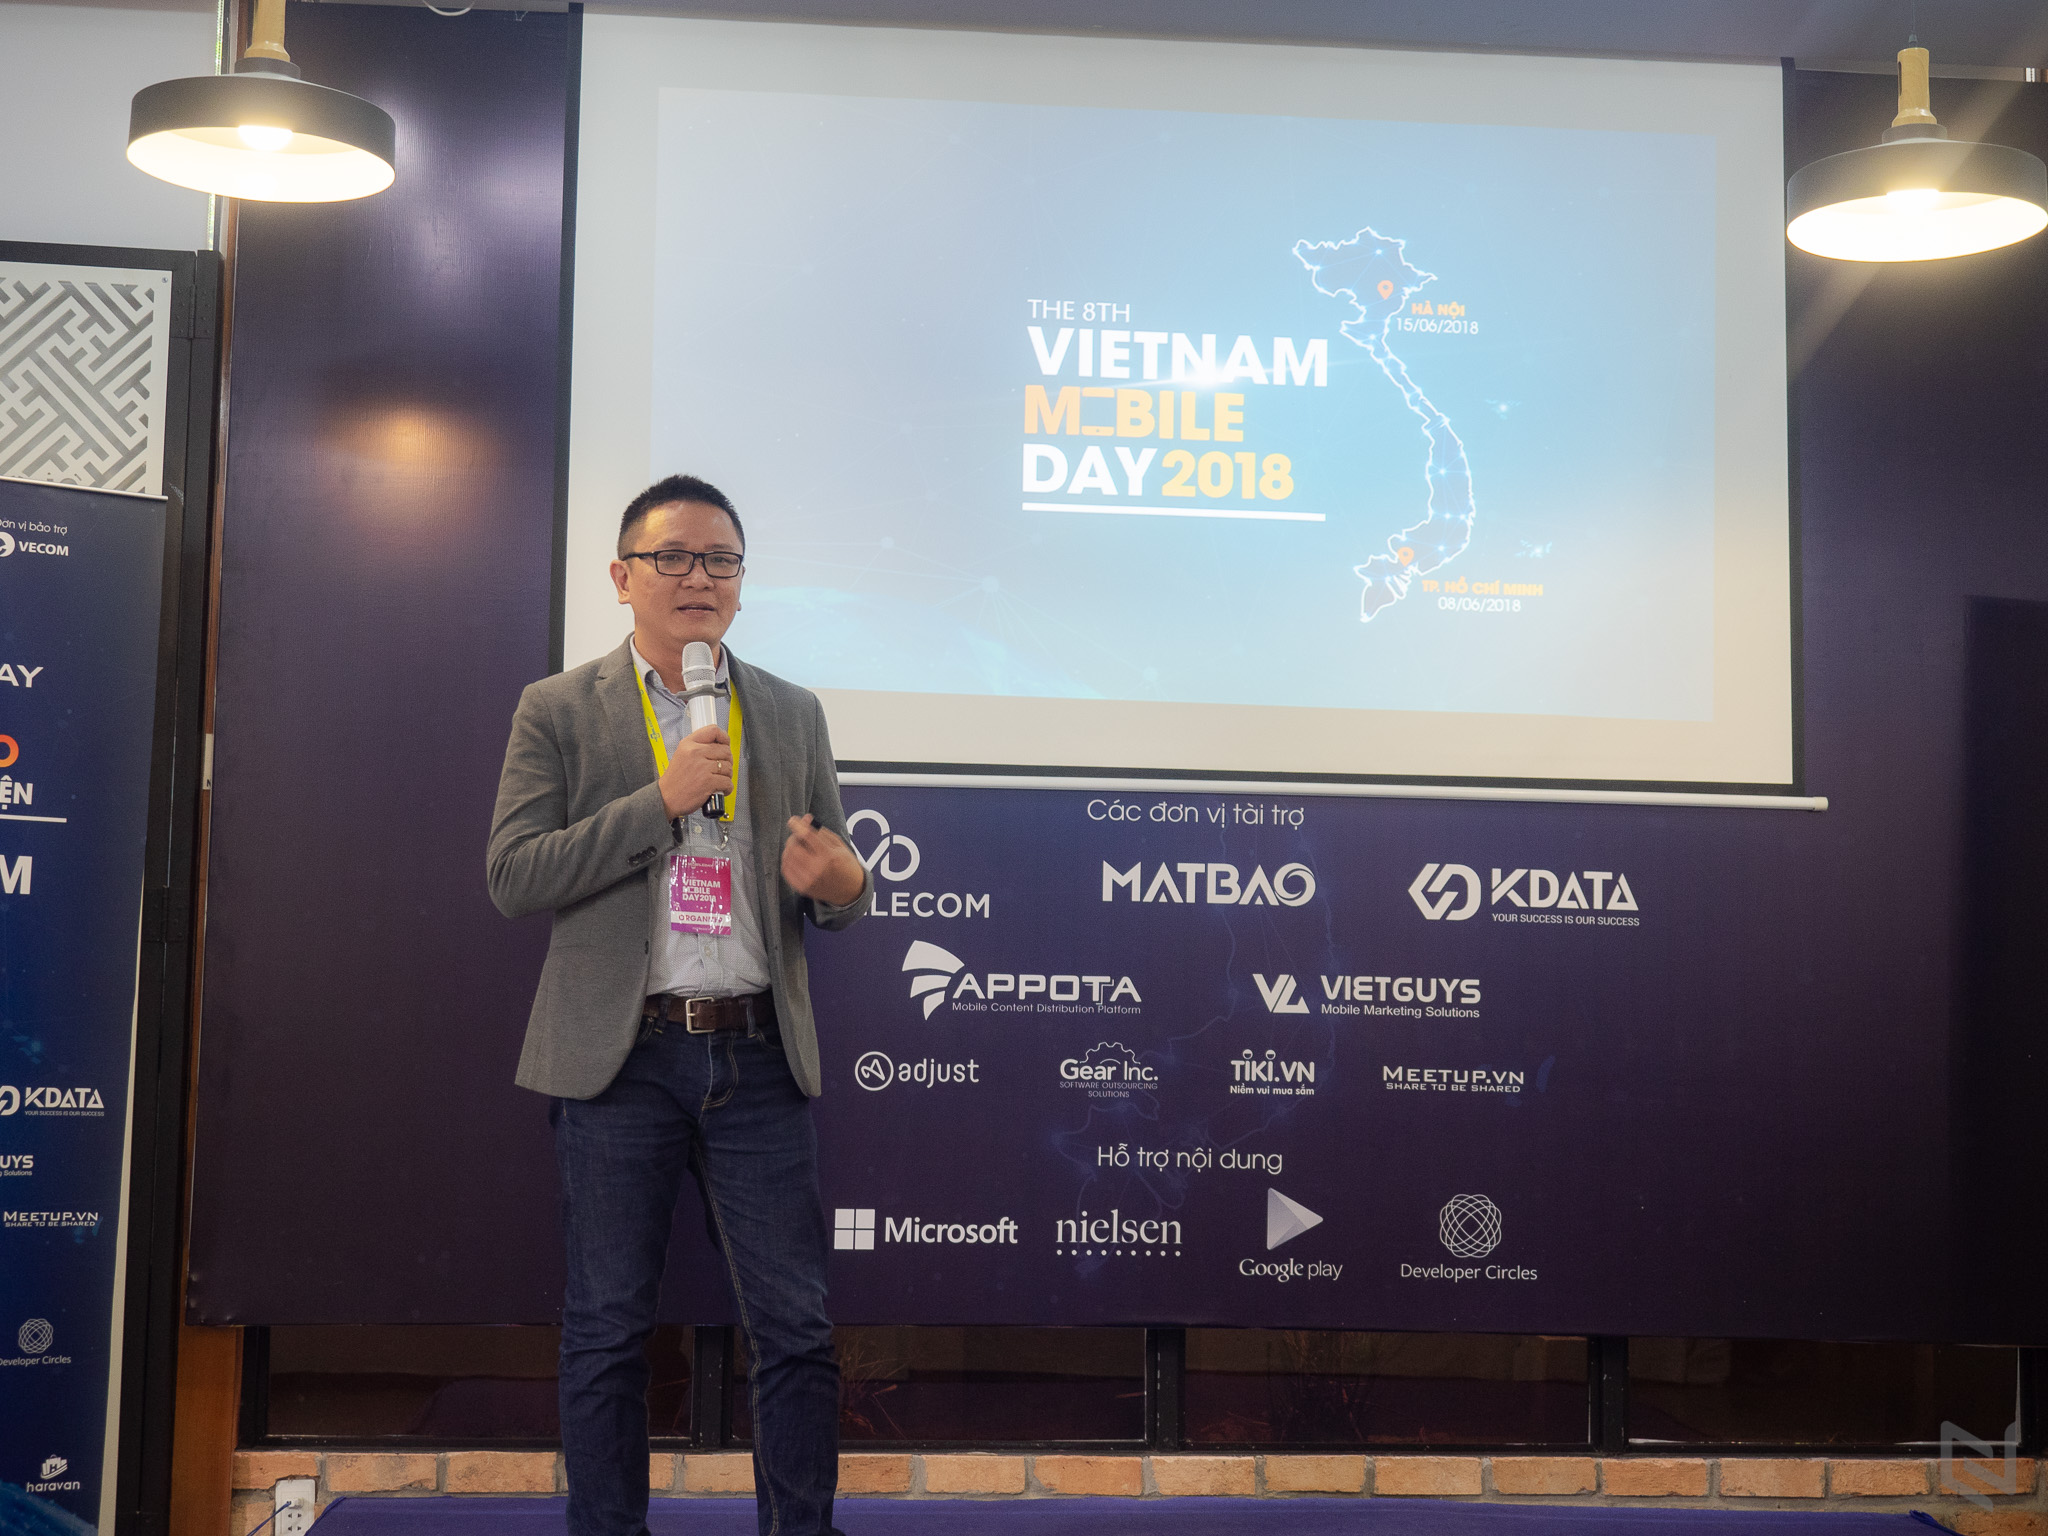 Các tập đoàn công nghệ khổng lồ sẽ khuấy động sân chơi VietNam Mobile Day 2018